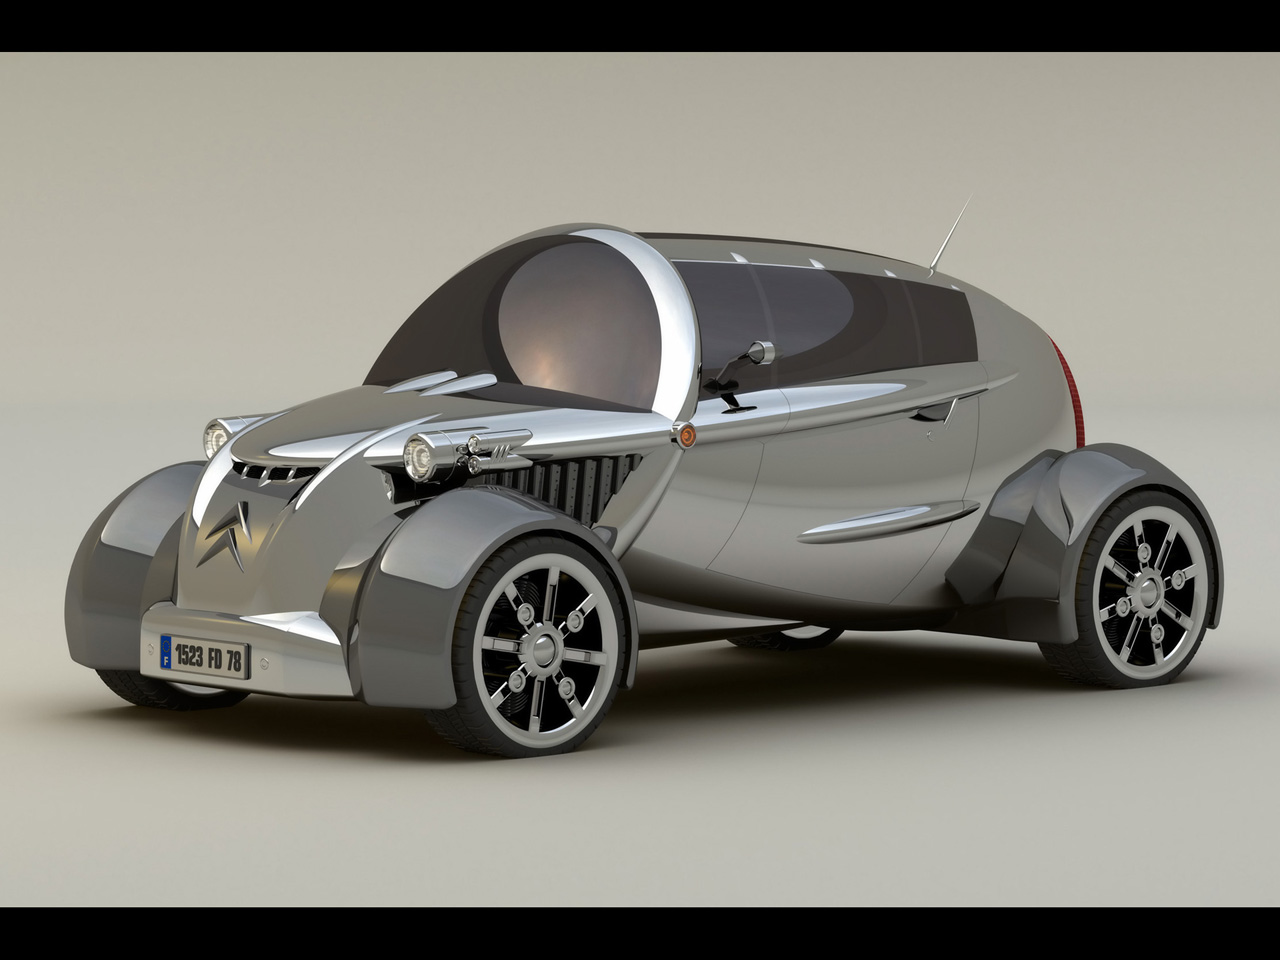 2008 Citroen 2CV Concept Design by David Portela